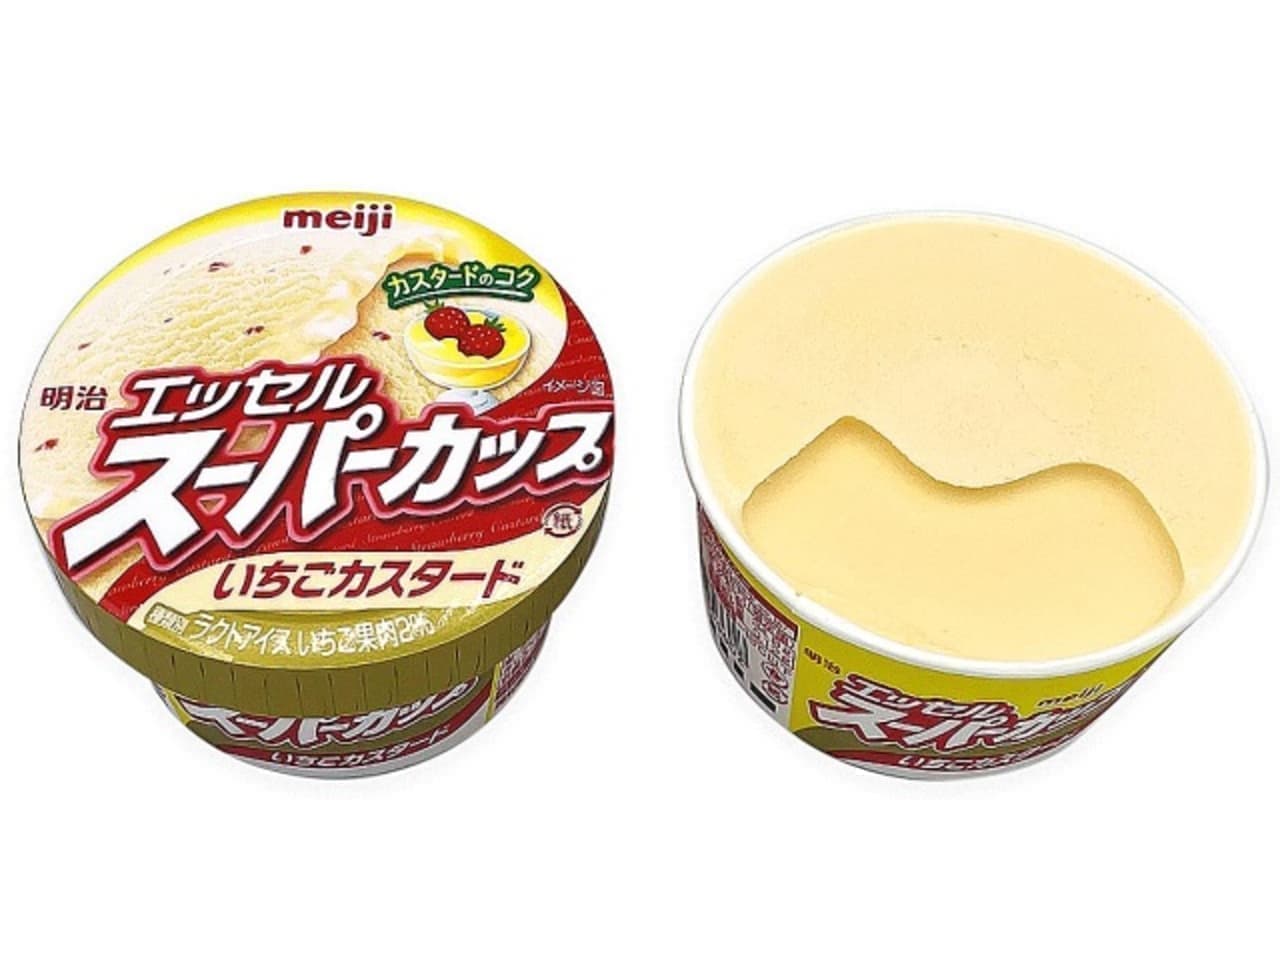 7-ELEVEN "Meiji Esser Strawberry Custard